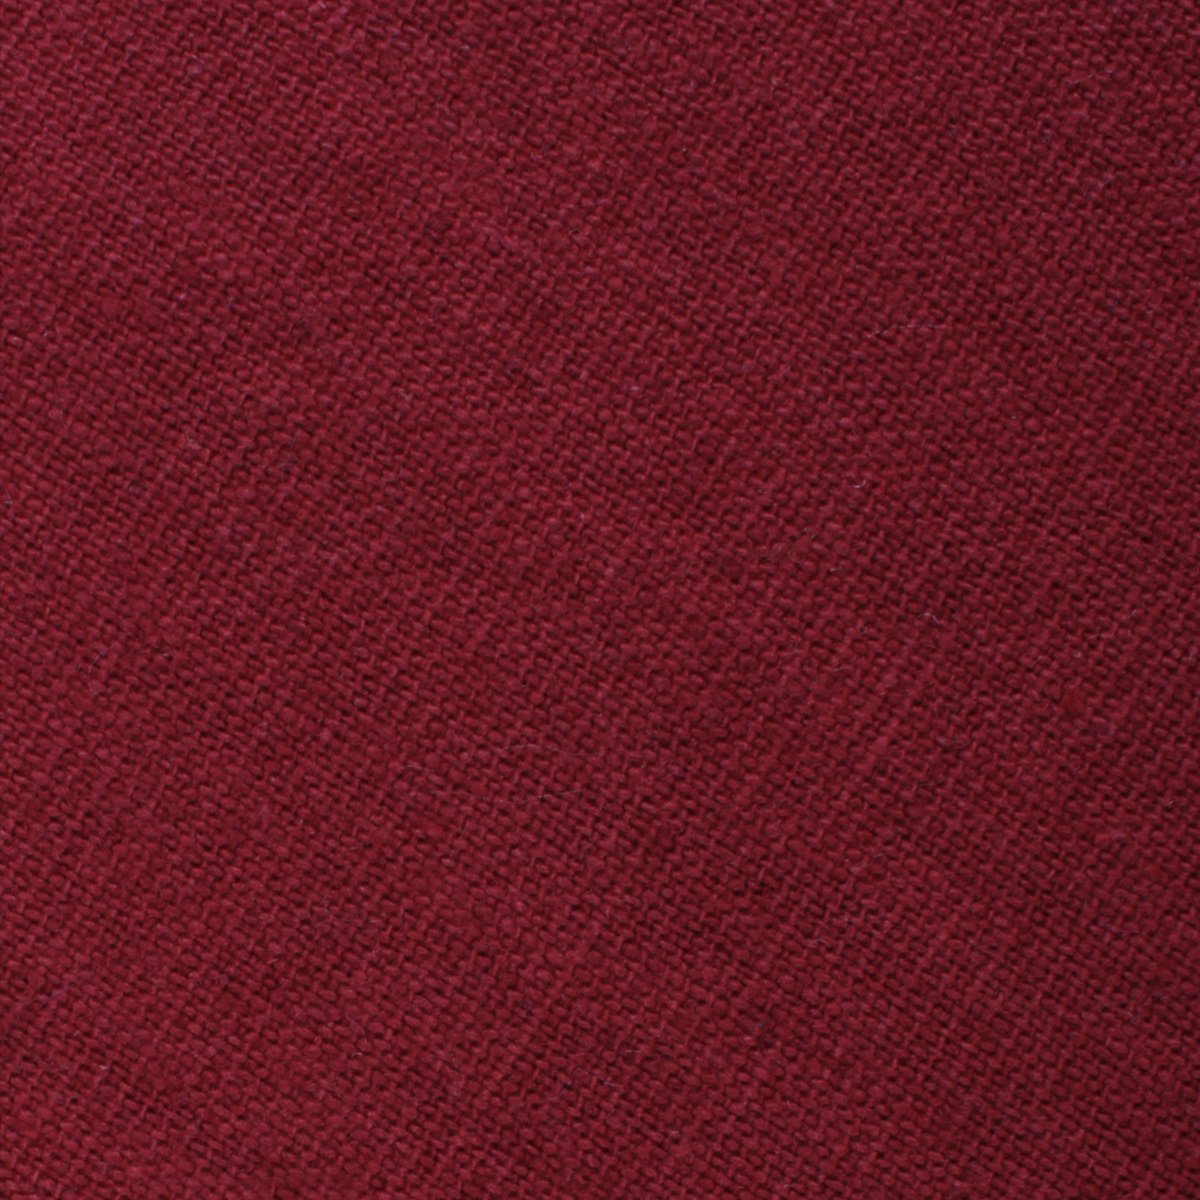 Carmine Burgundy Linen Necktie Fabric